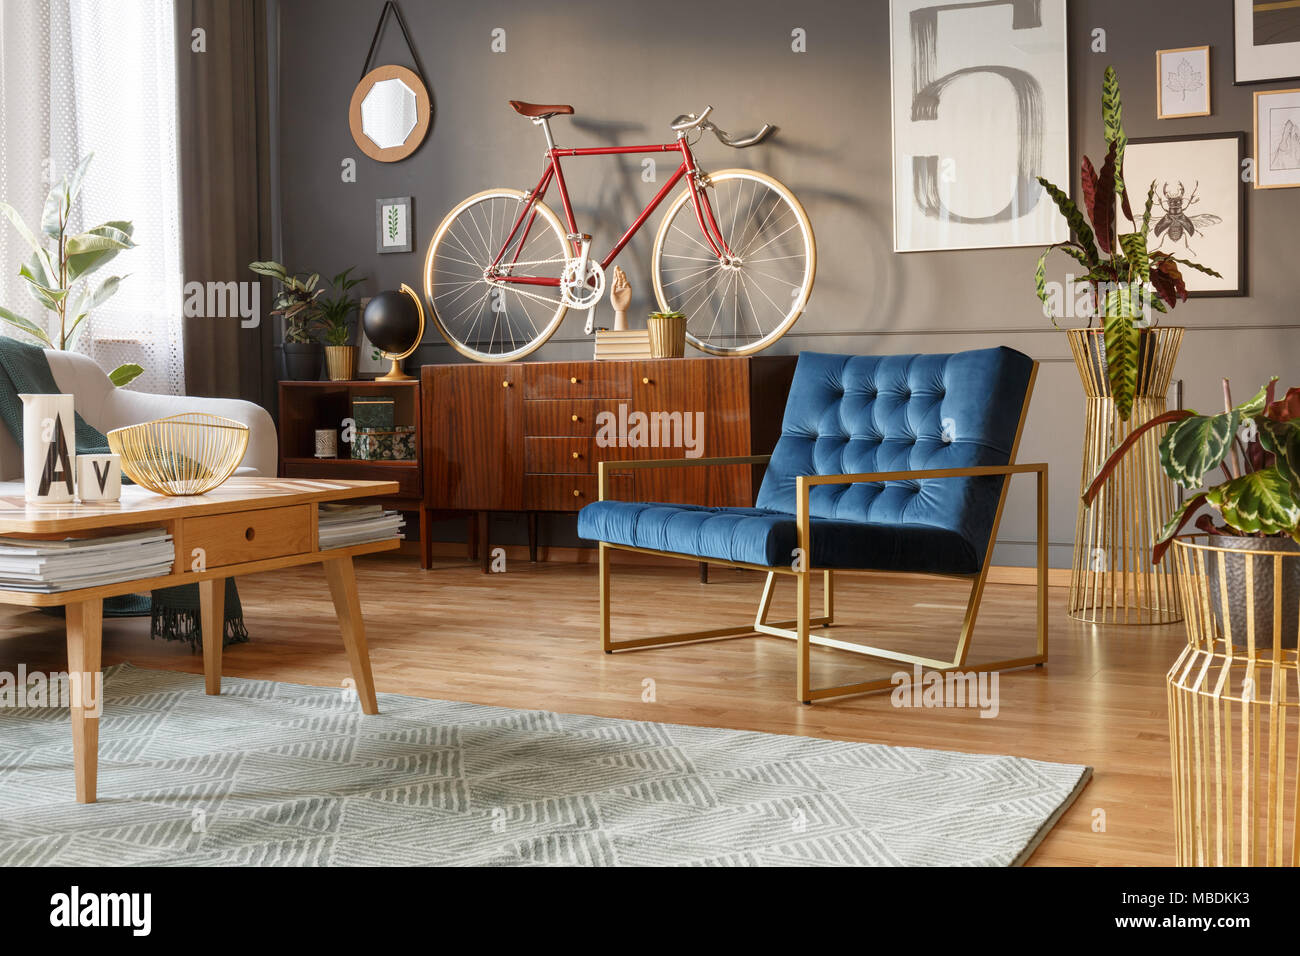 Fauteuil d'or et bleu, table en bois et rétro avec un vélo sur l'armoire en haut d''un salon intérieur Banque D'Images